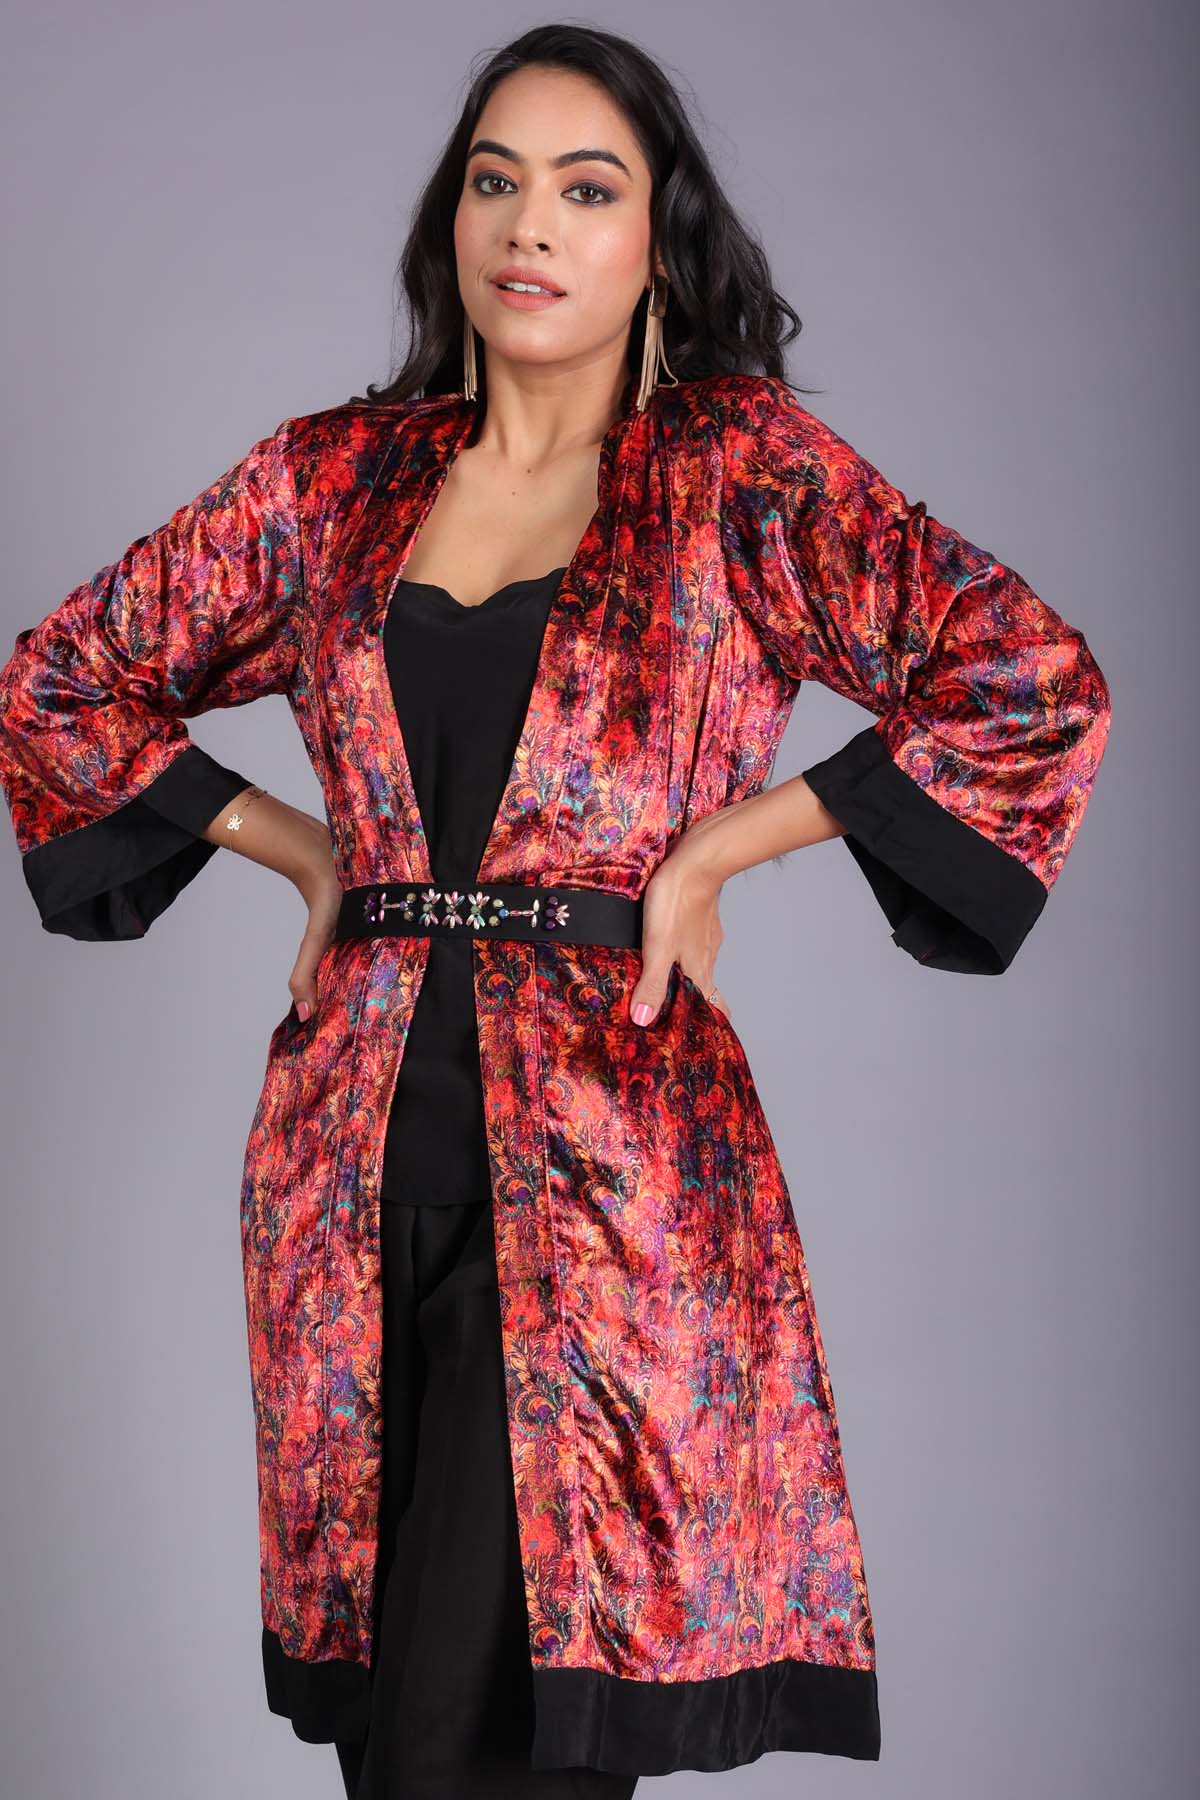 Etti Kapoor Red Velvet Printed Long Jacket for women online at ScrollnShops